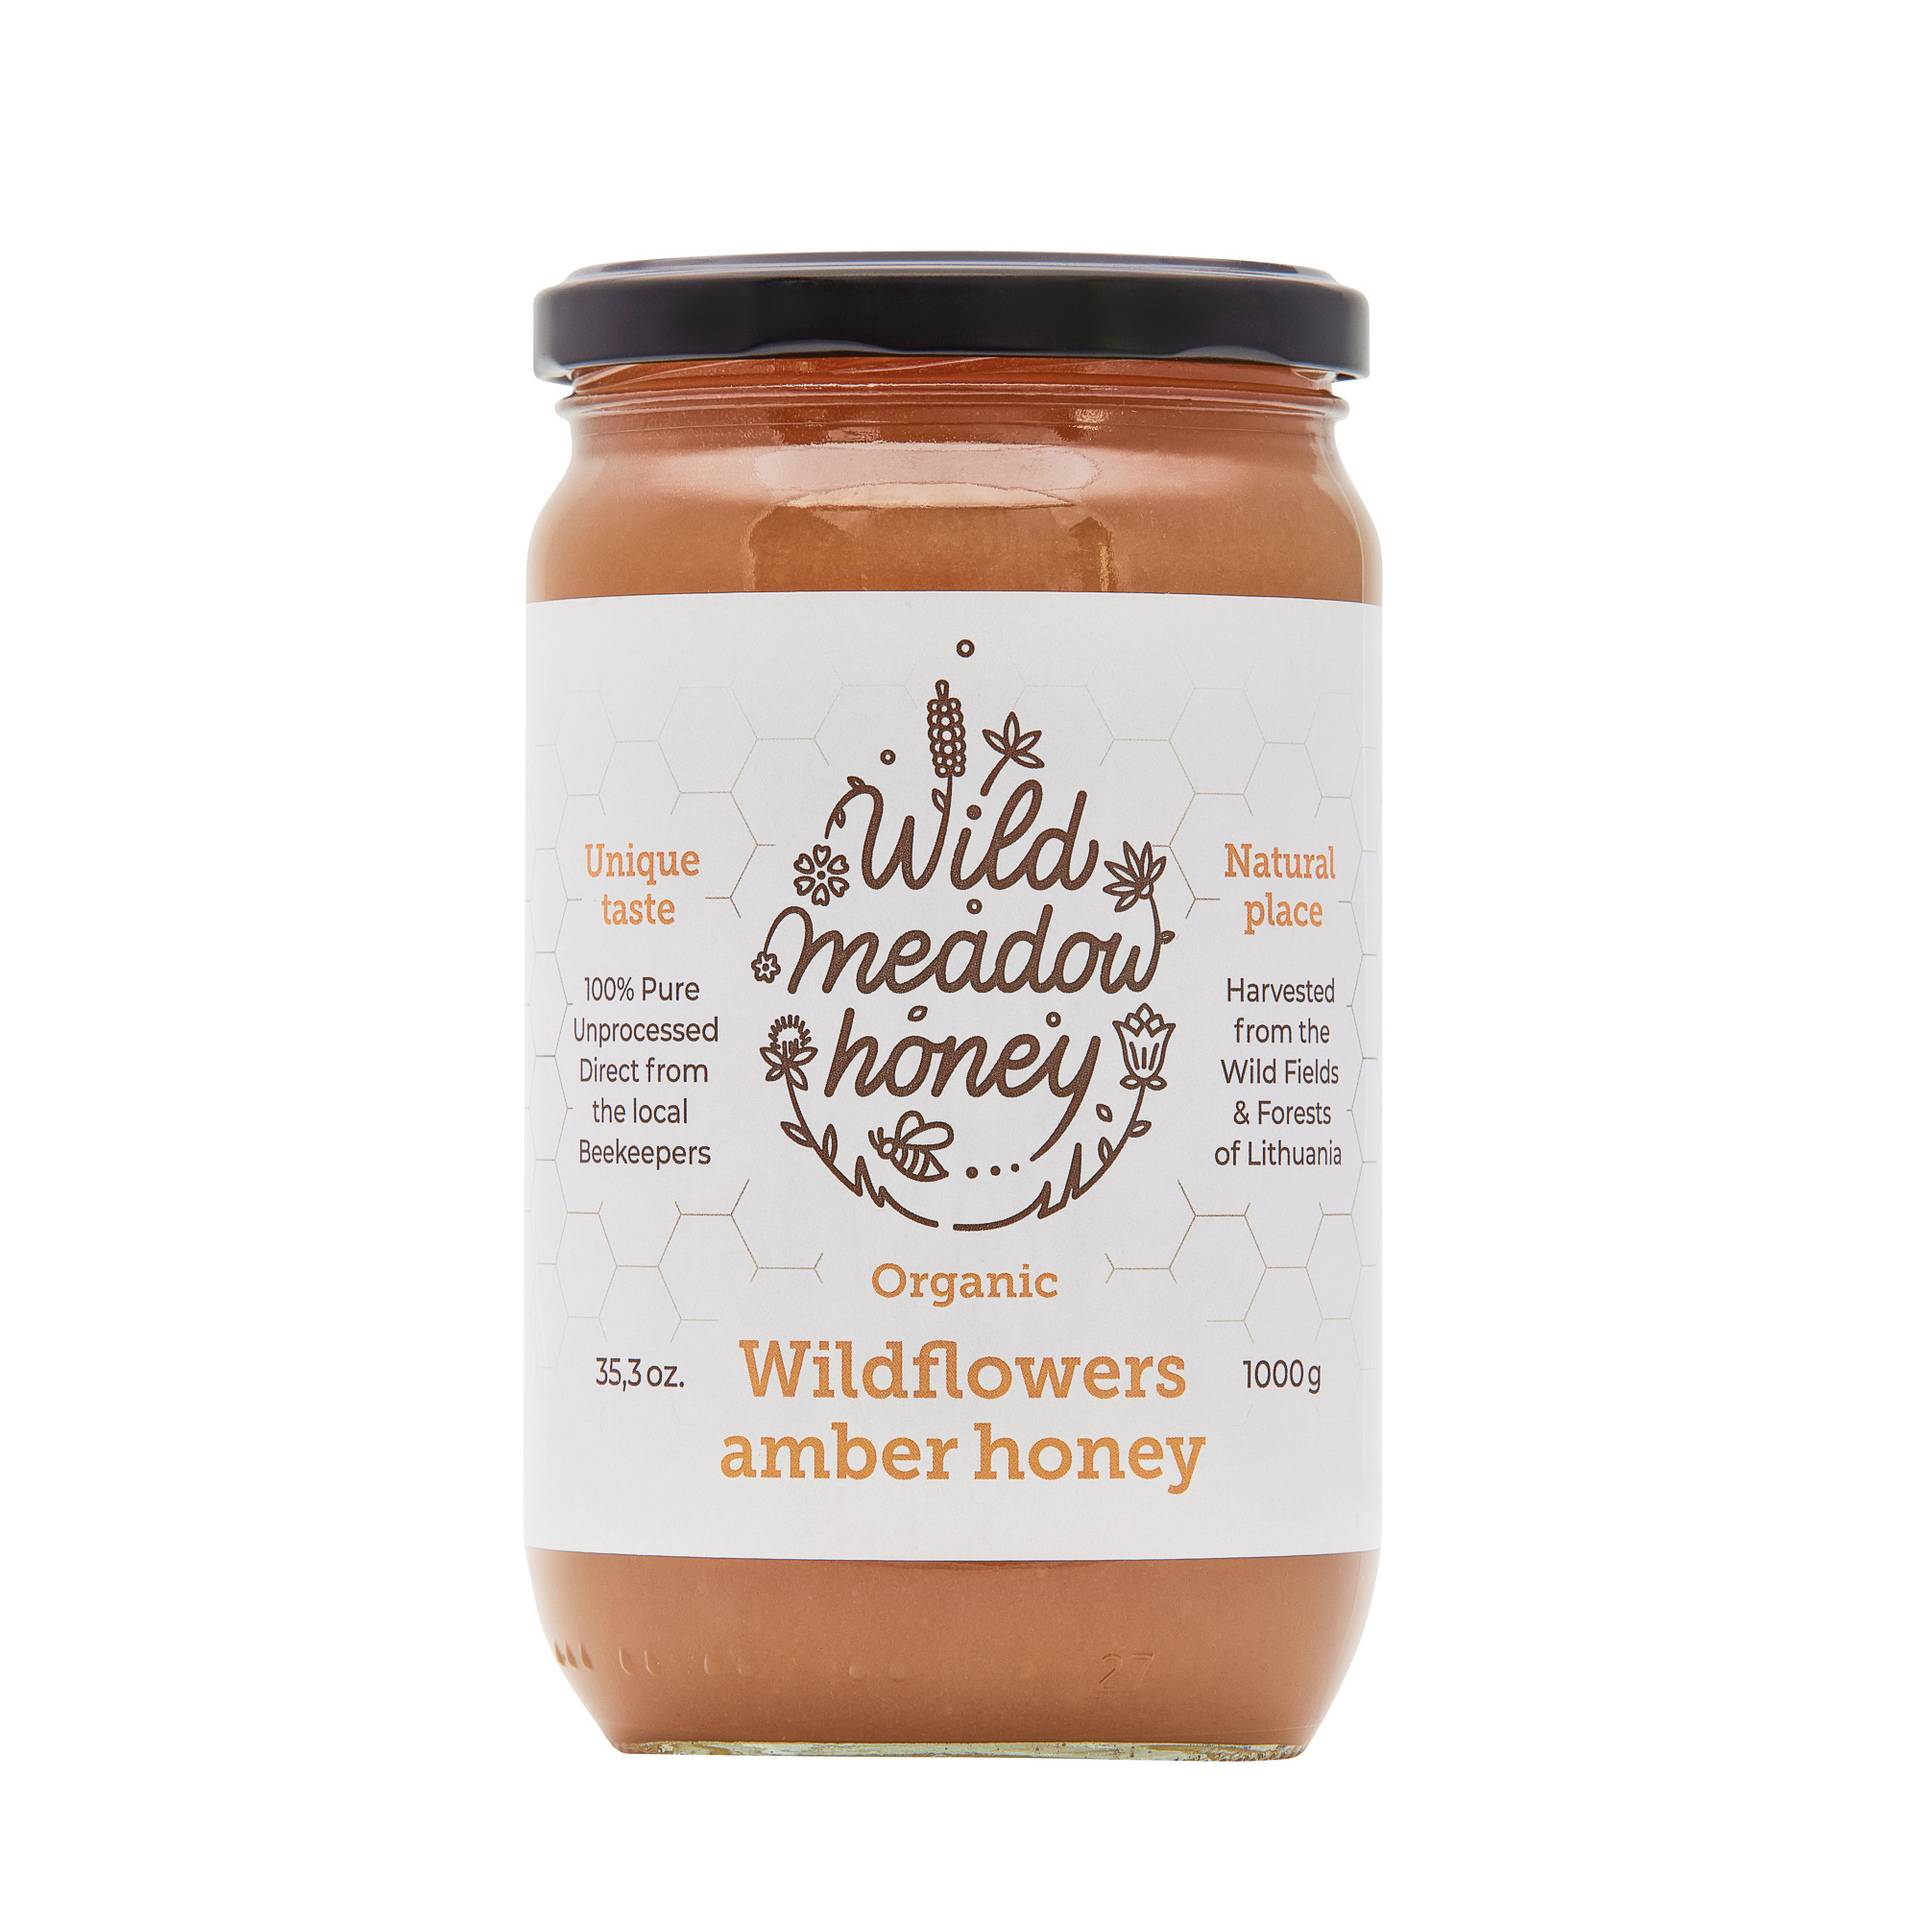 Organic wildflowers amber honey